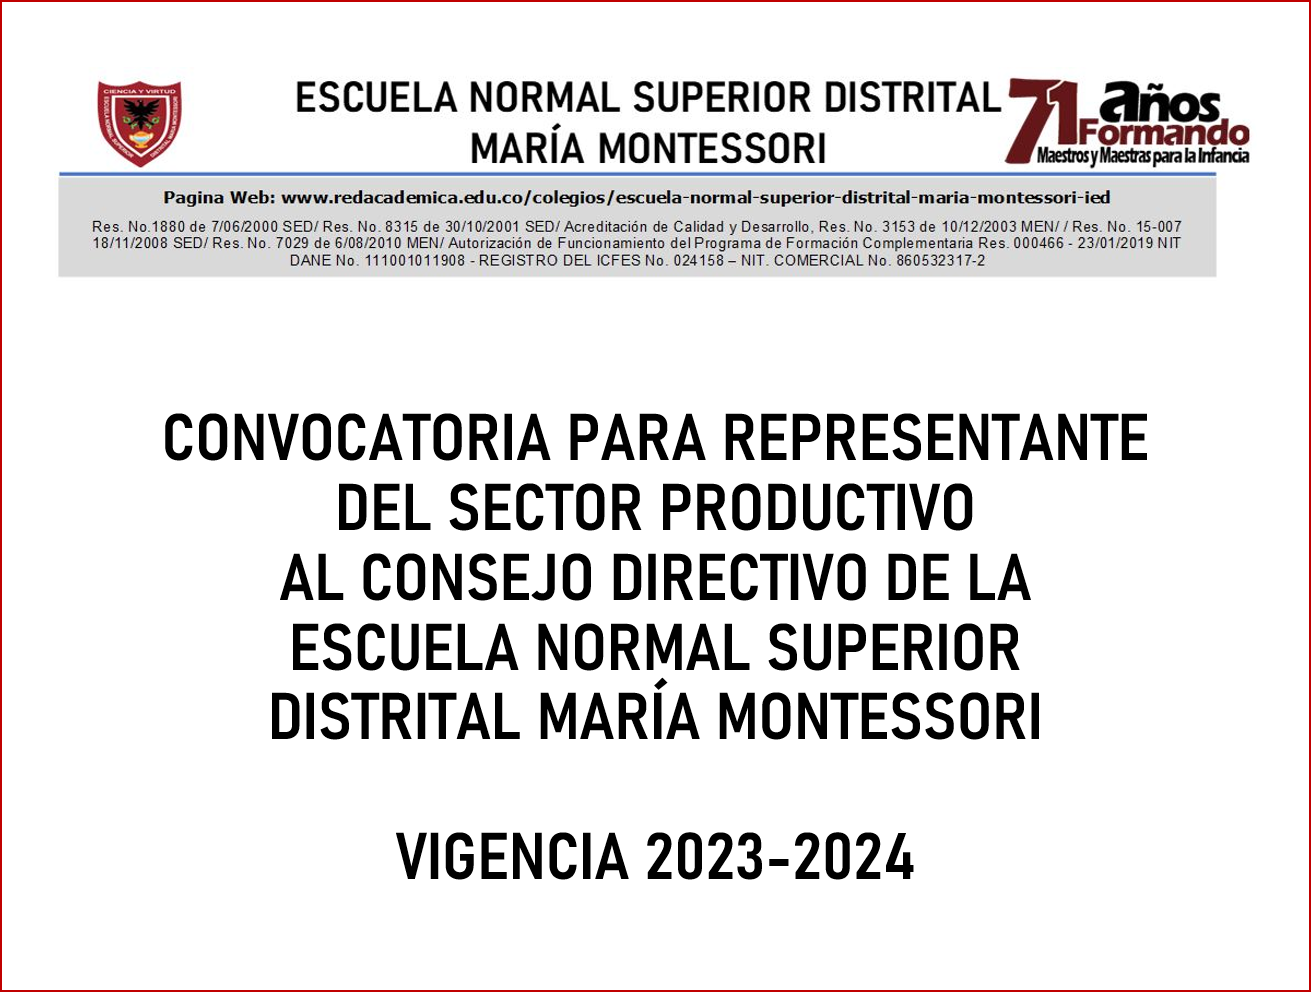 CONVOCATORIA PARA REPRESENTANTE DEL SECTOR PRODUCTIVO AL CONSEJO DIRECTIVO DE LA ESCUELA NORMAL SUPERIOR DISTRITAL MARÍA MONTESSORI VIGENCIA 2023-2024